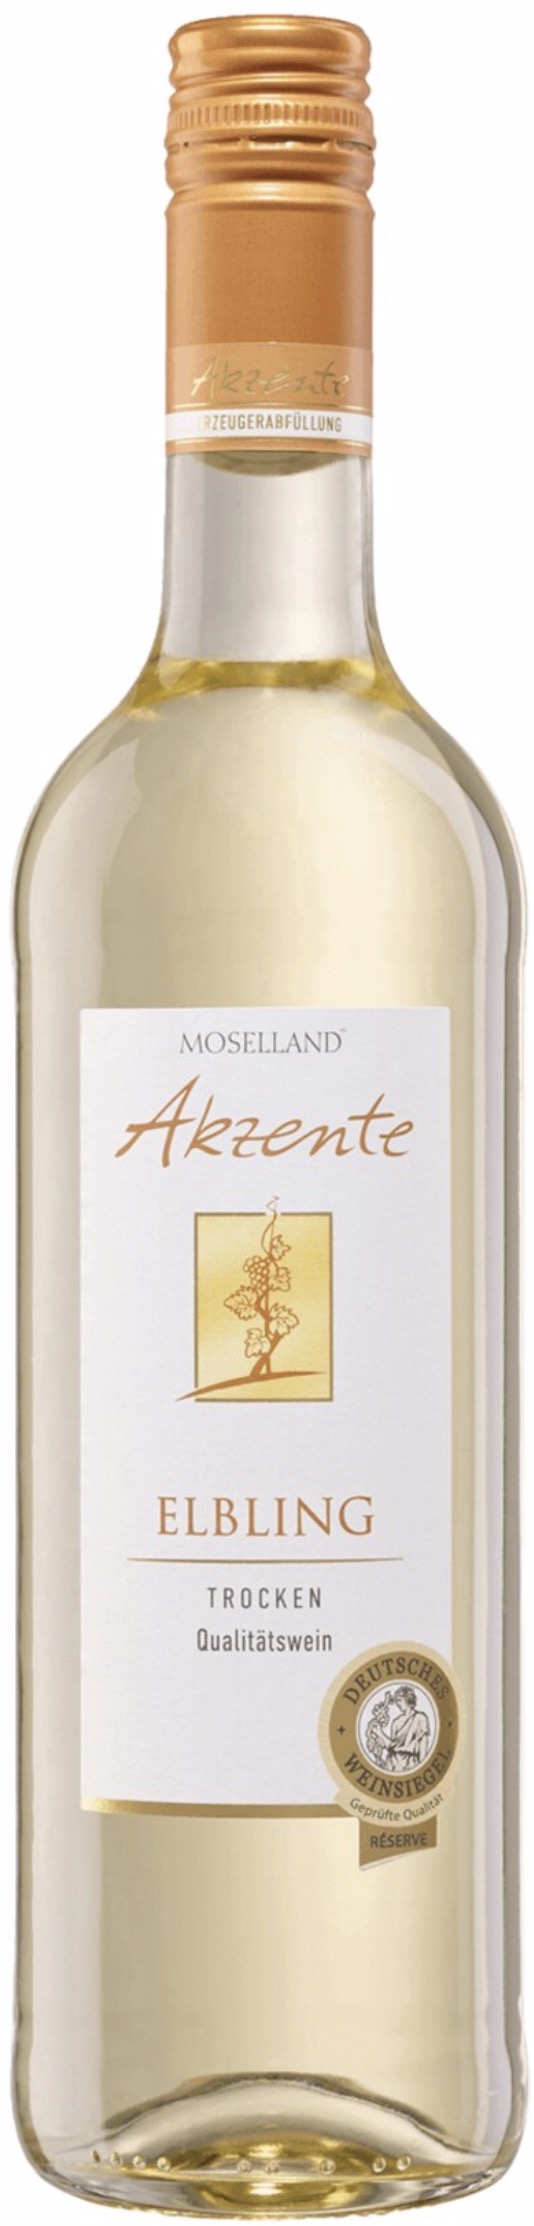 Moselland Akzente Elbling trocken 12% vol. 0,75L